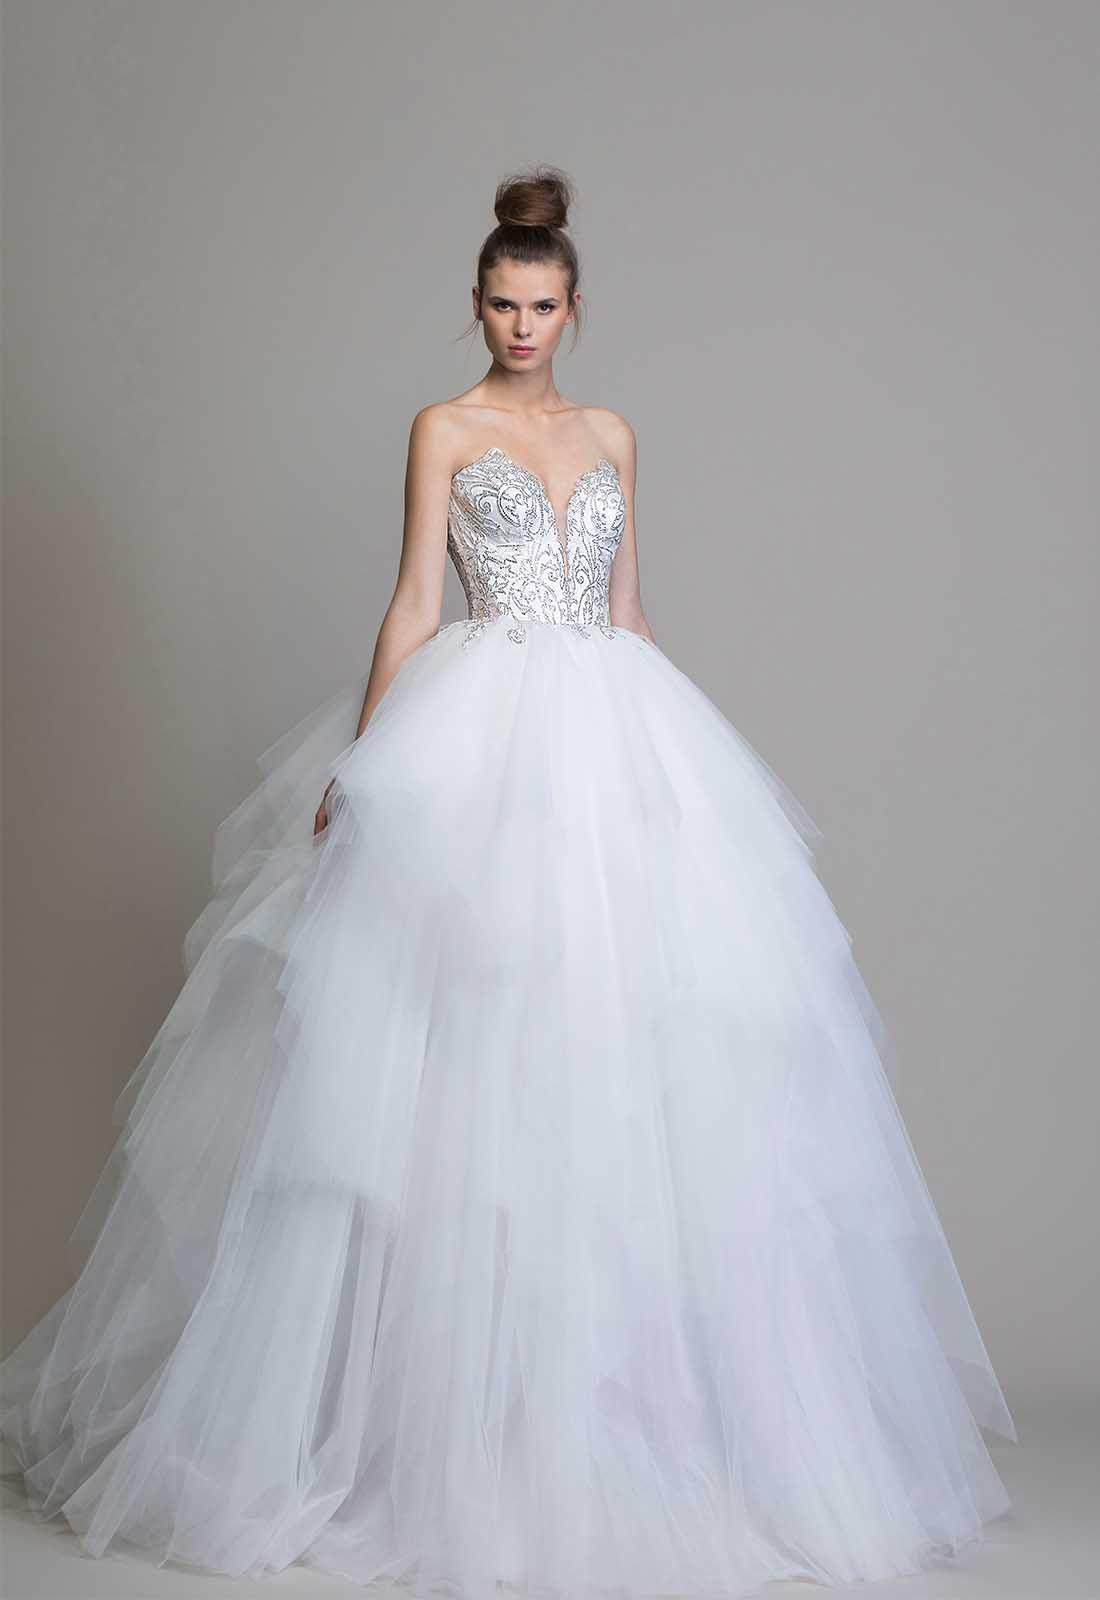 45 vestidos de novia estilo princesa para impactar con tu look nupcial